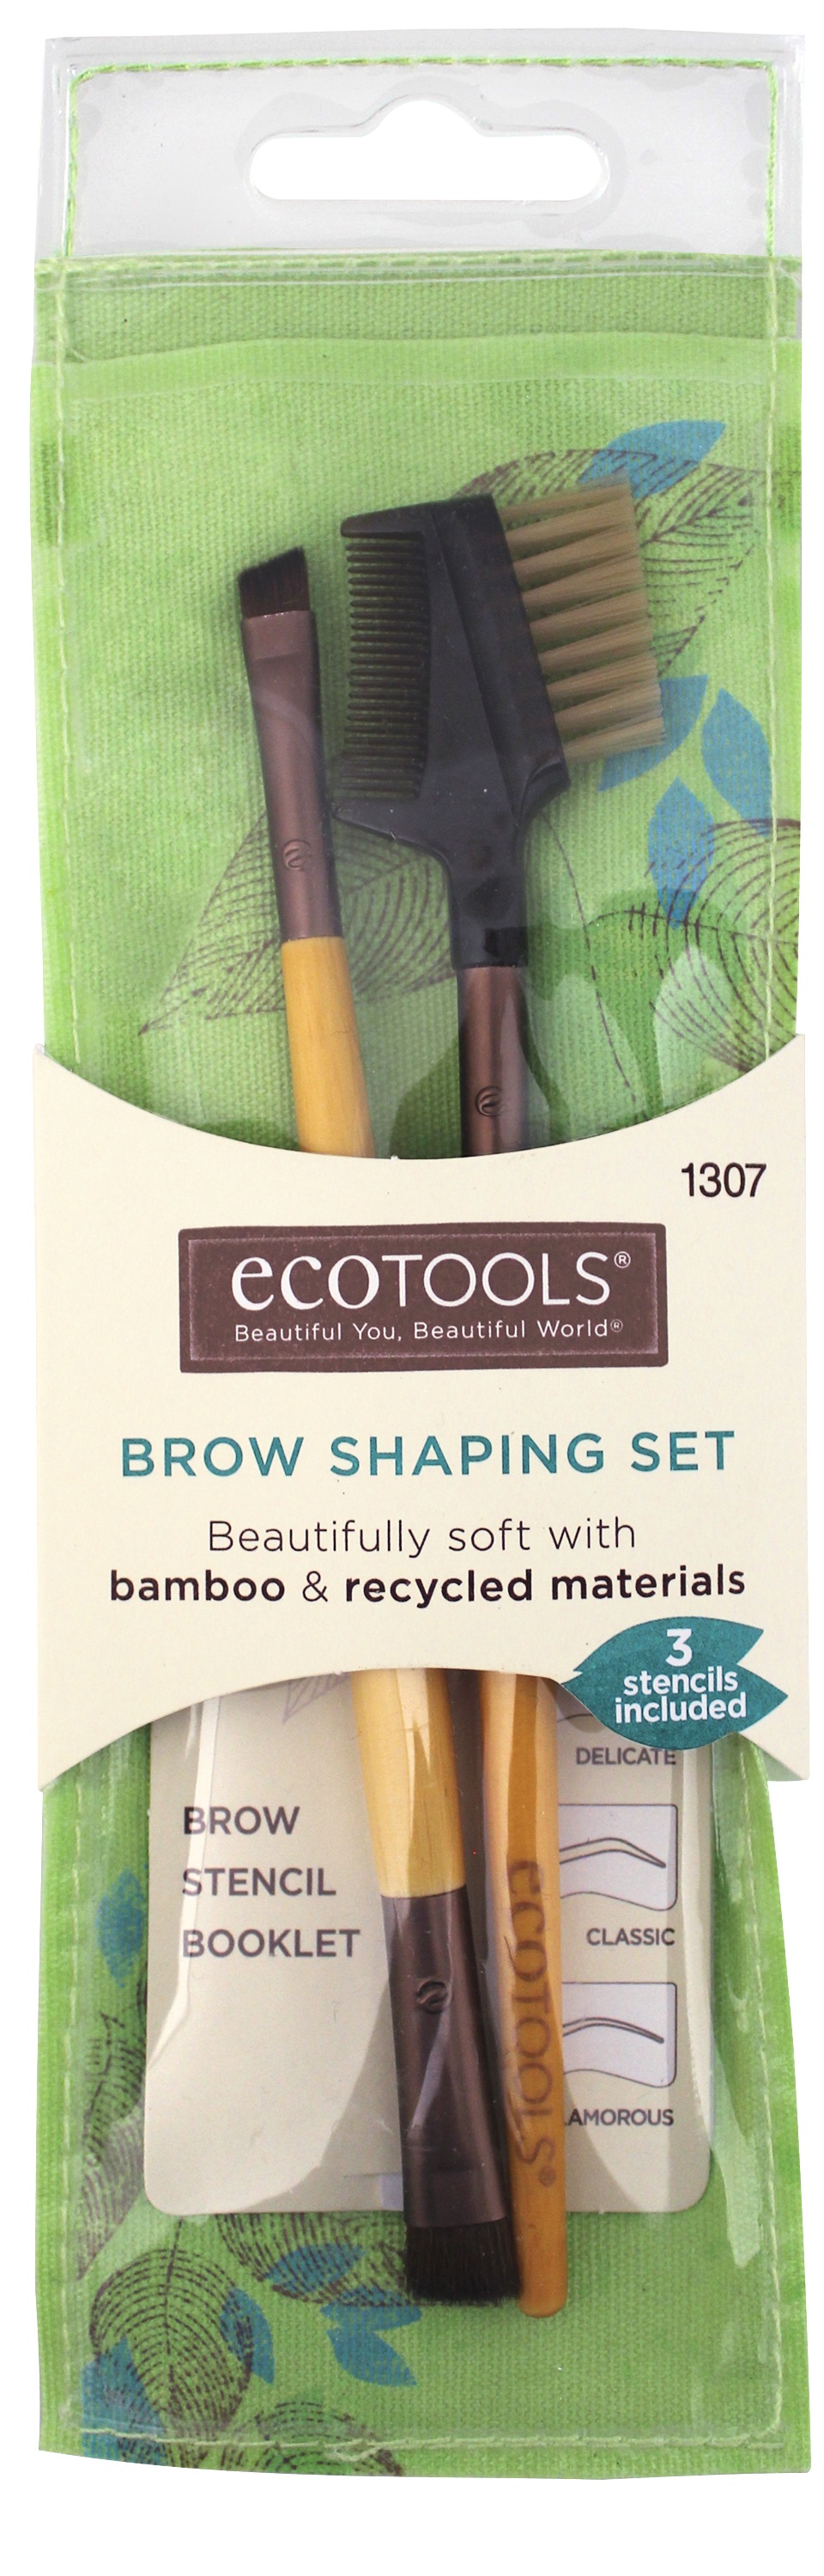 Ecotools Brow Shaping Set